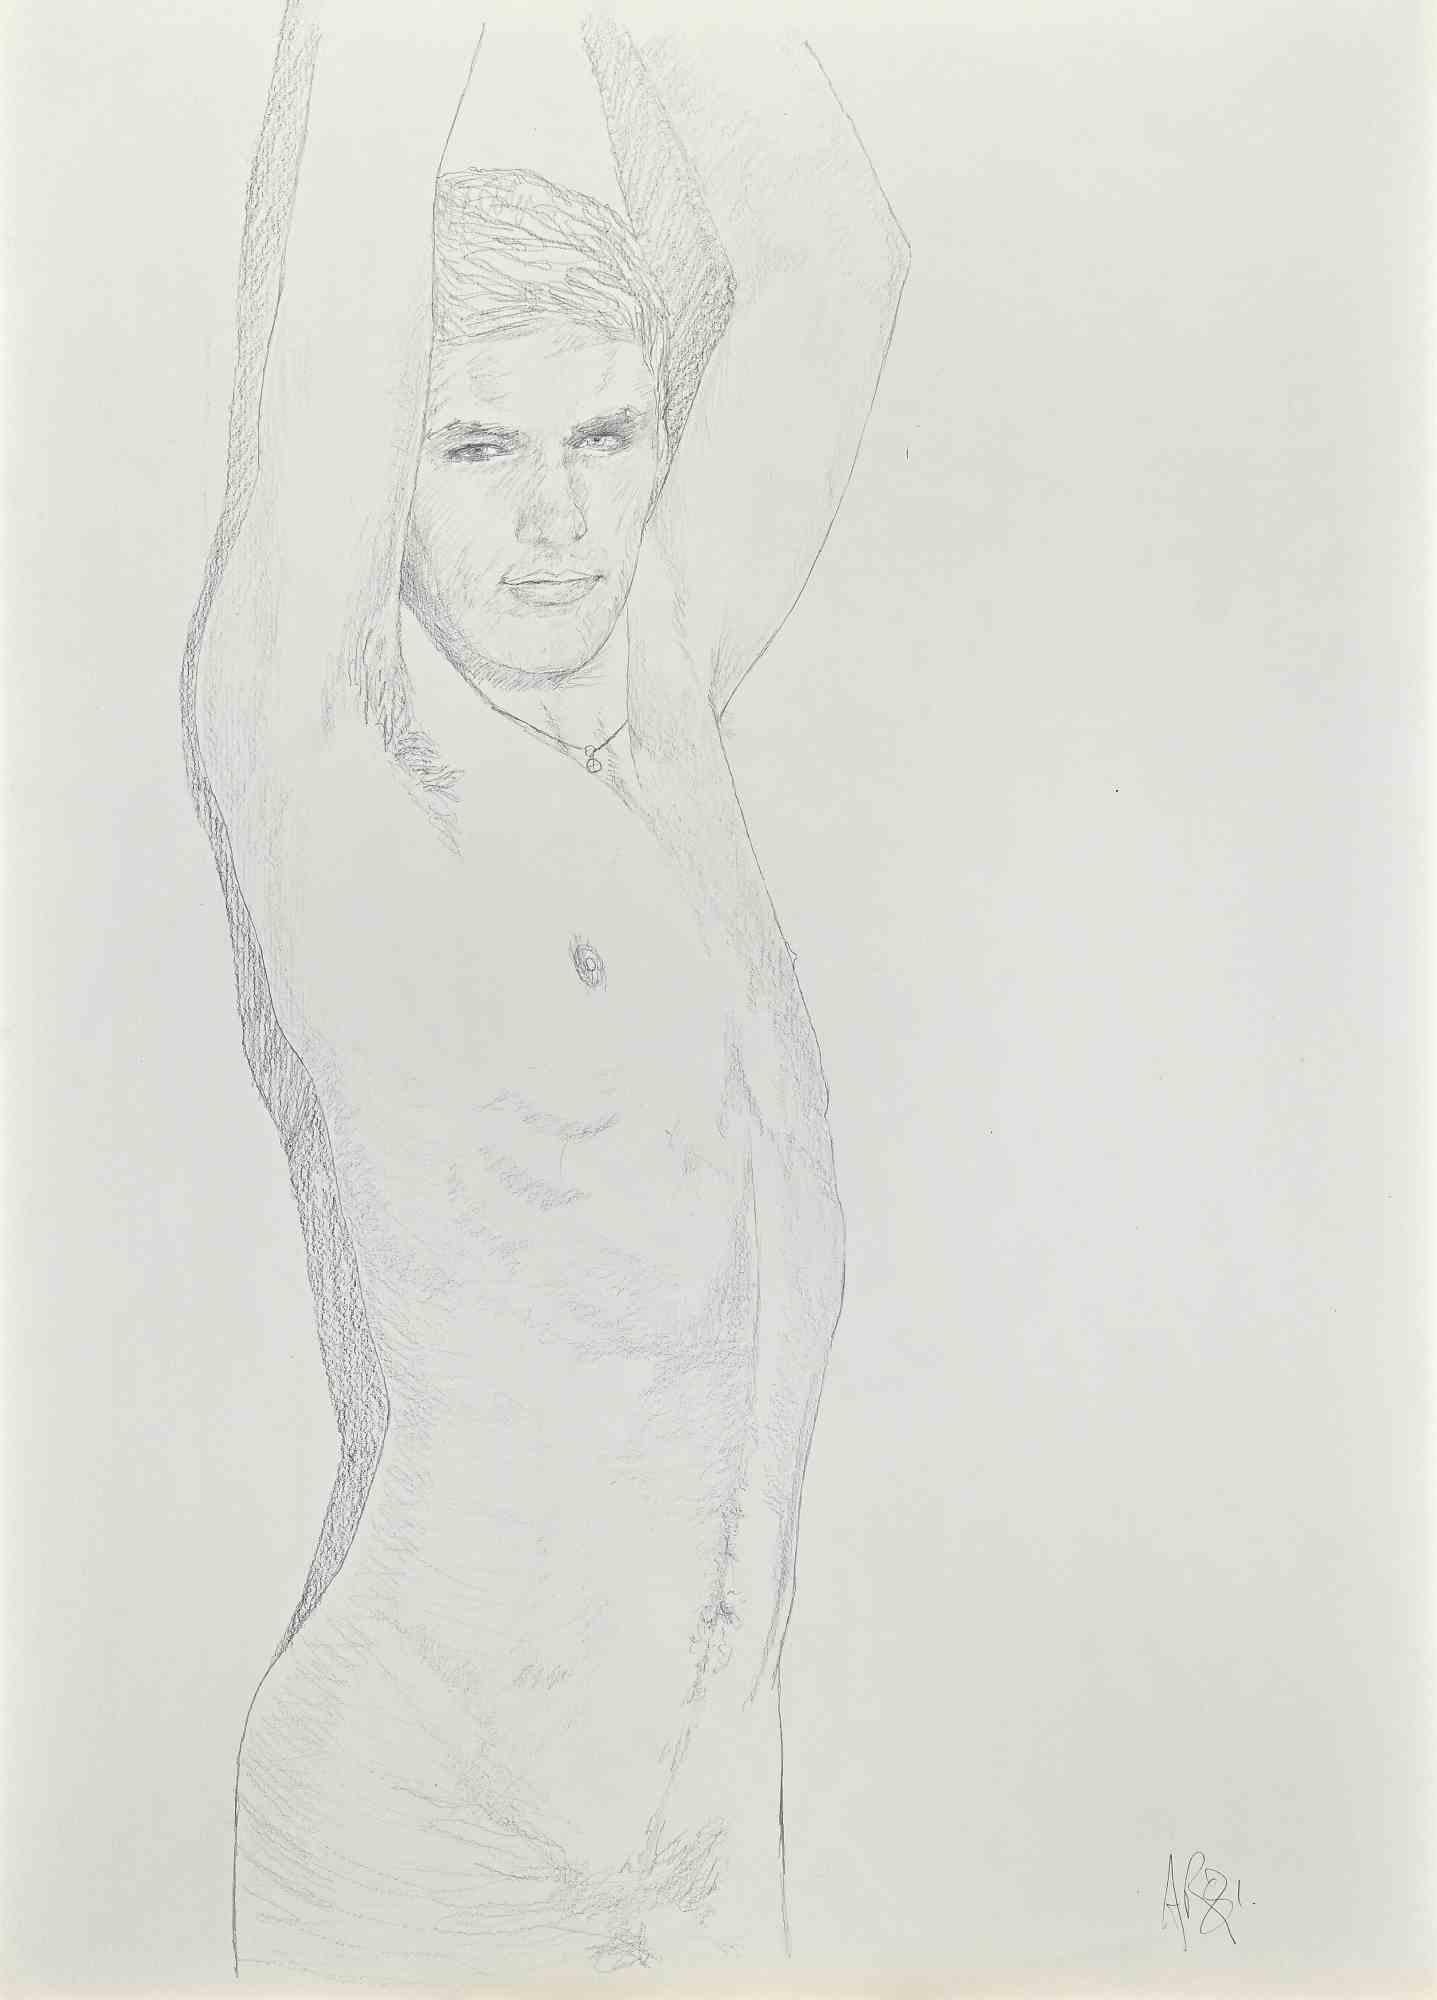 Boy Nude est un dessin original au crayon réalisé par Anthony Roaland en 1981.

Bon état sur un carton blanc, une marge avec un bloc-notes de type déchirure.

Monogrammé par l'artiste dans le coin inférieur droit.